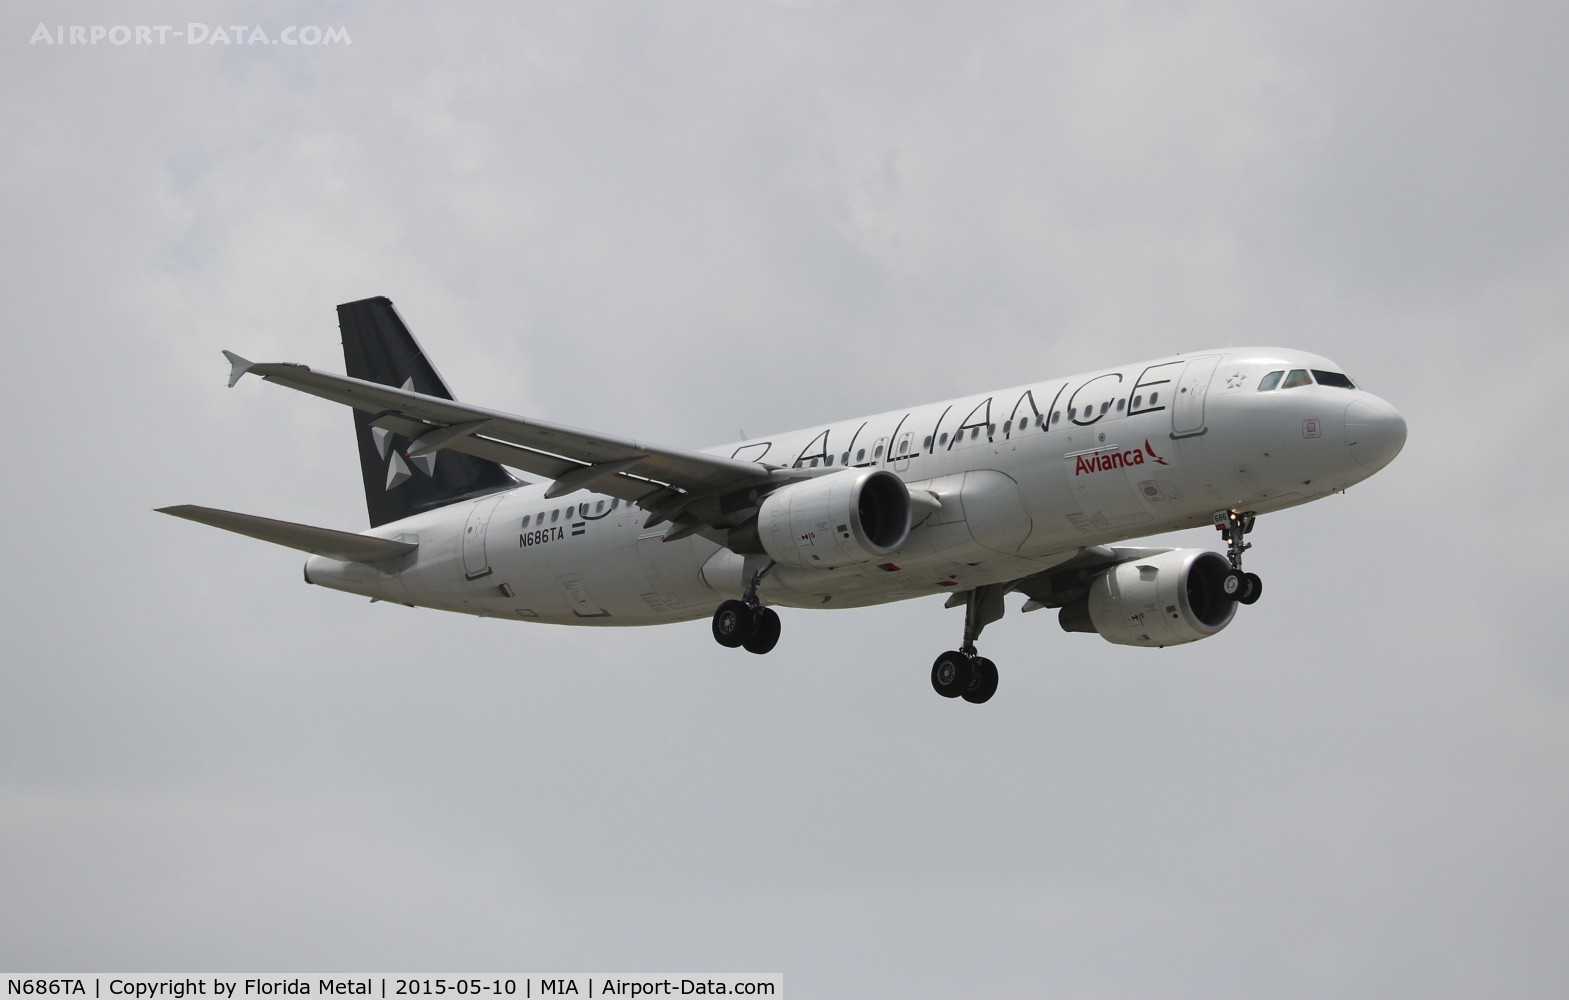 N686TA, 2012 Airbus A320-214 C/N 5238, Avianca Star Alliance